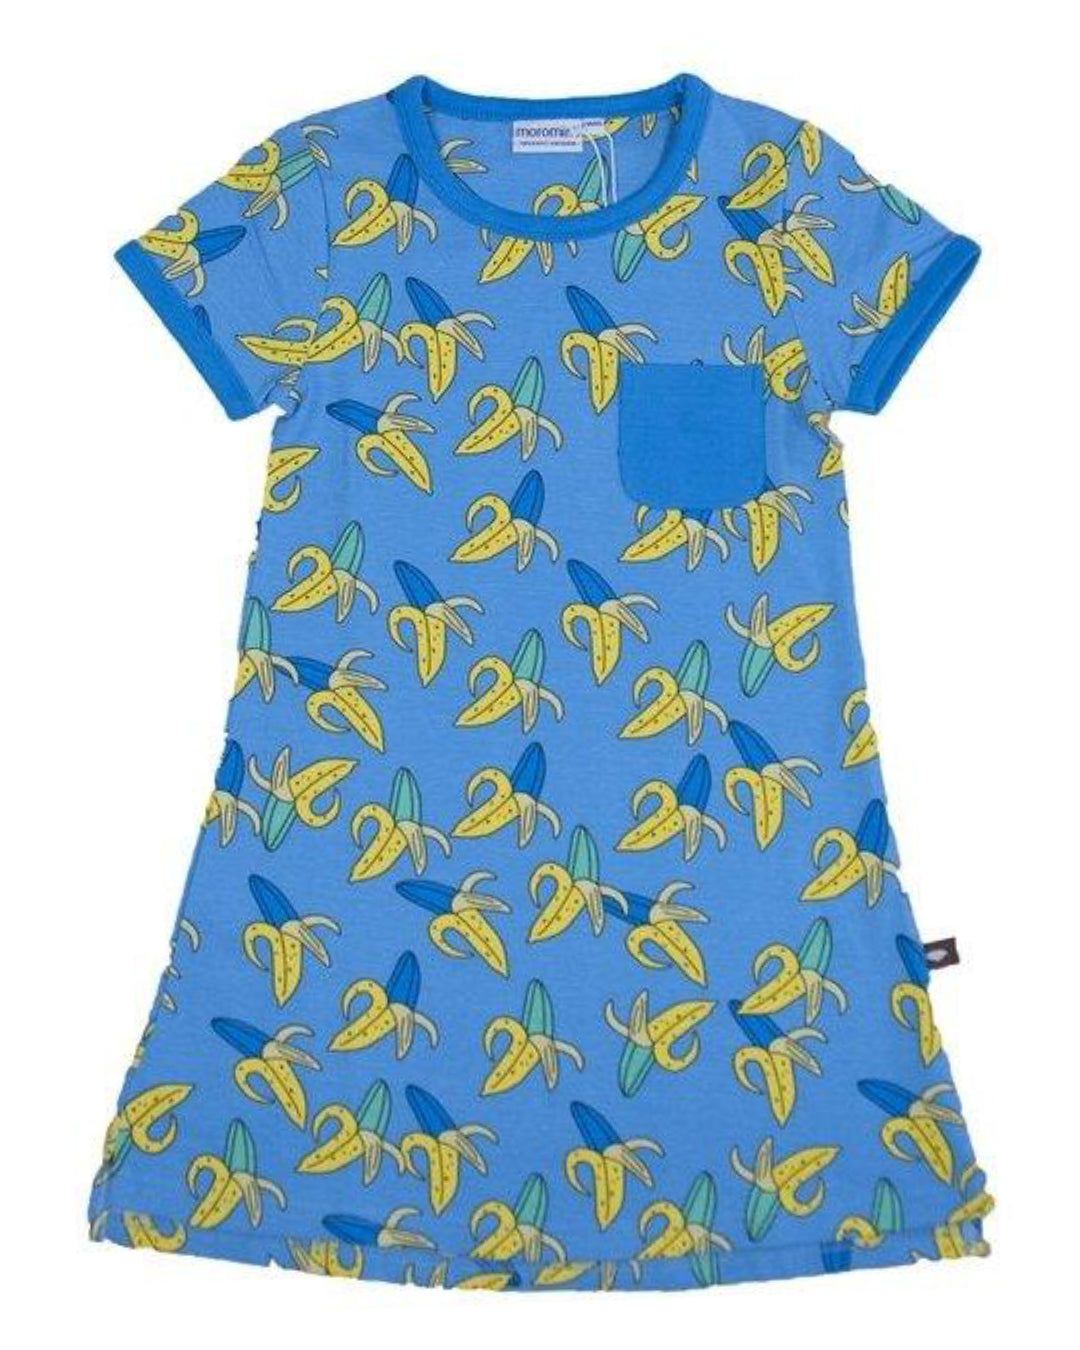 blaues kurzarm Kleid mit gelben Bananen von moromini aus Biobaumwolle